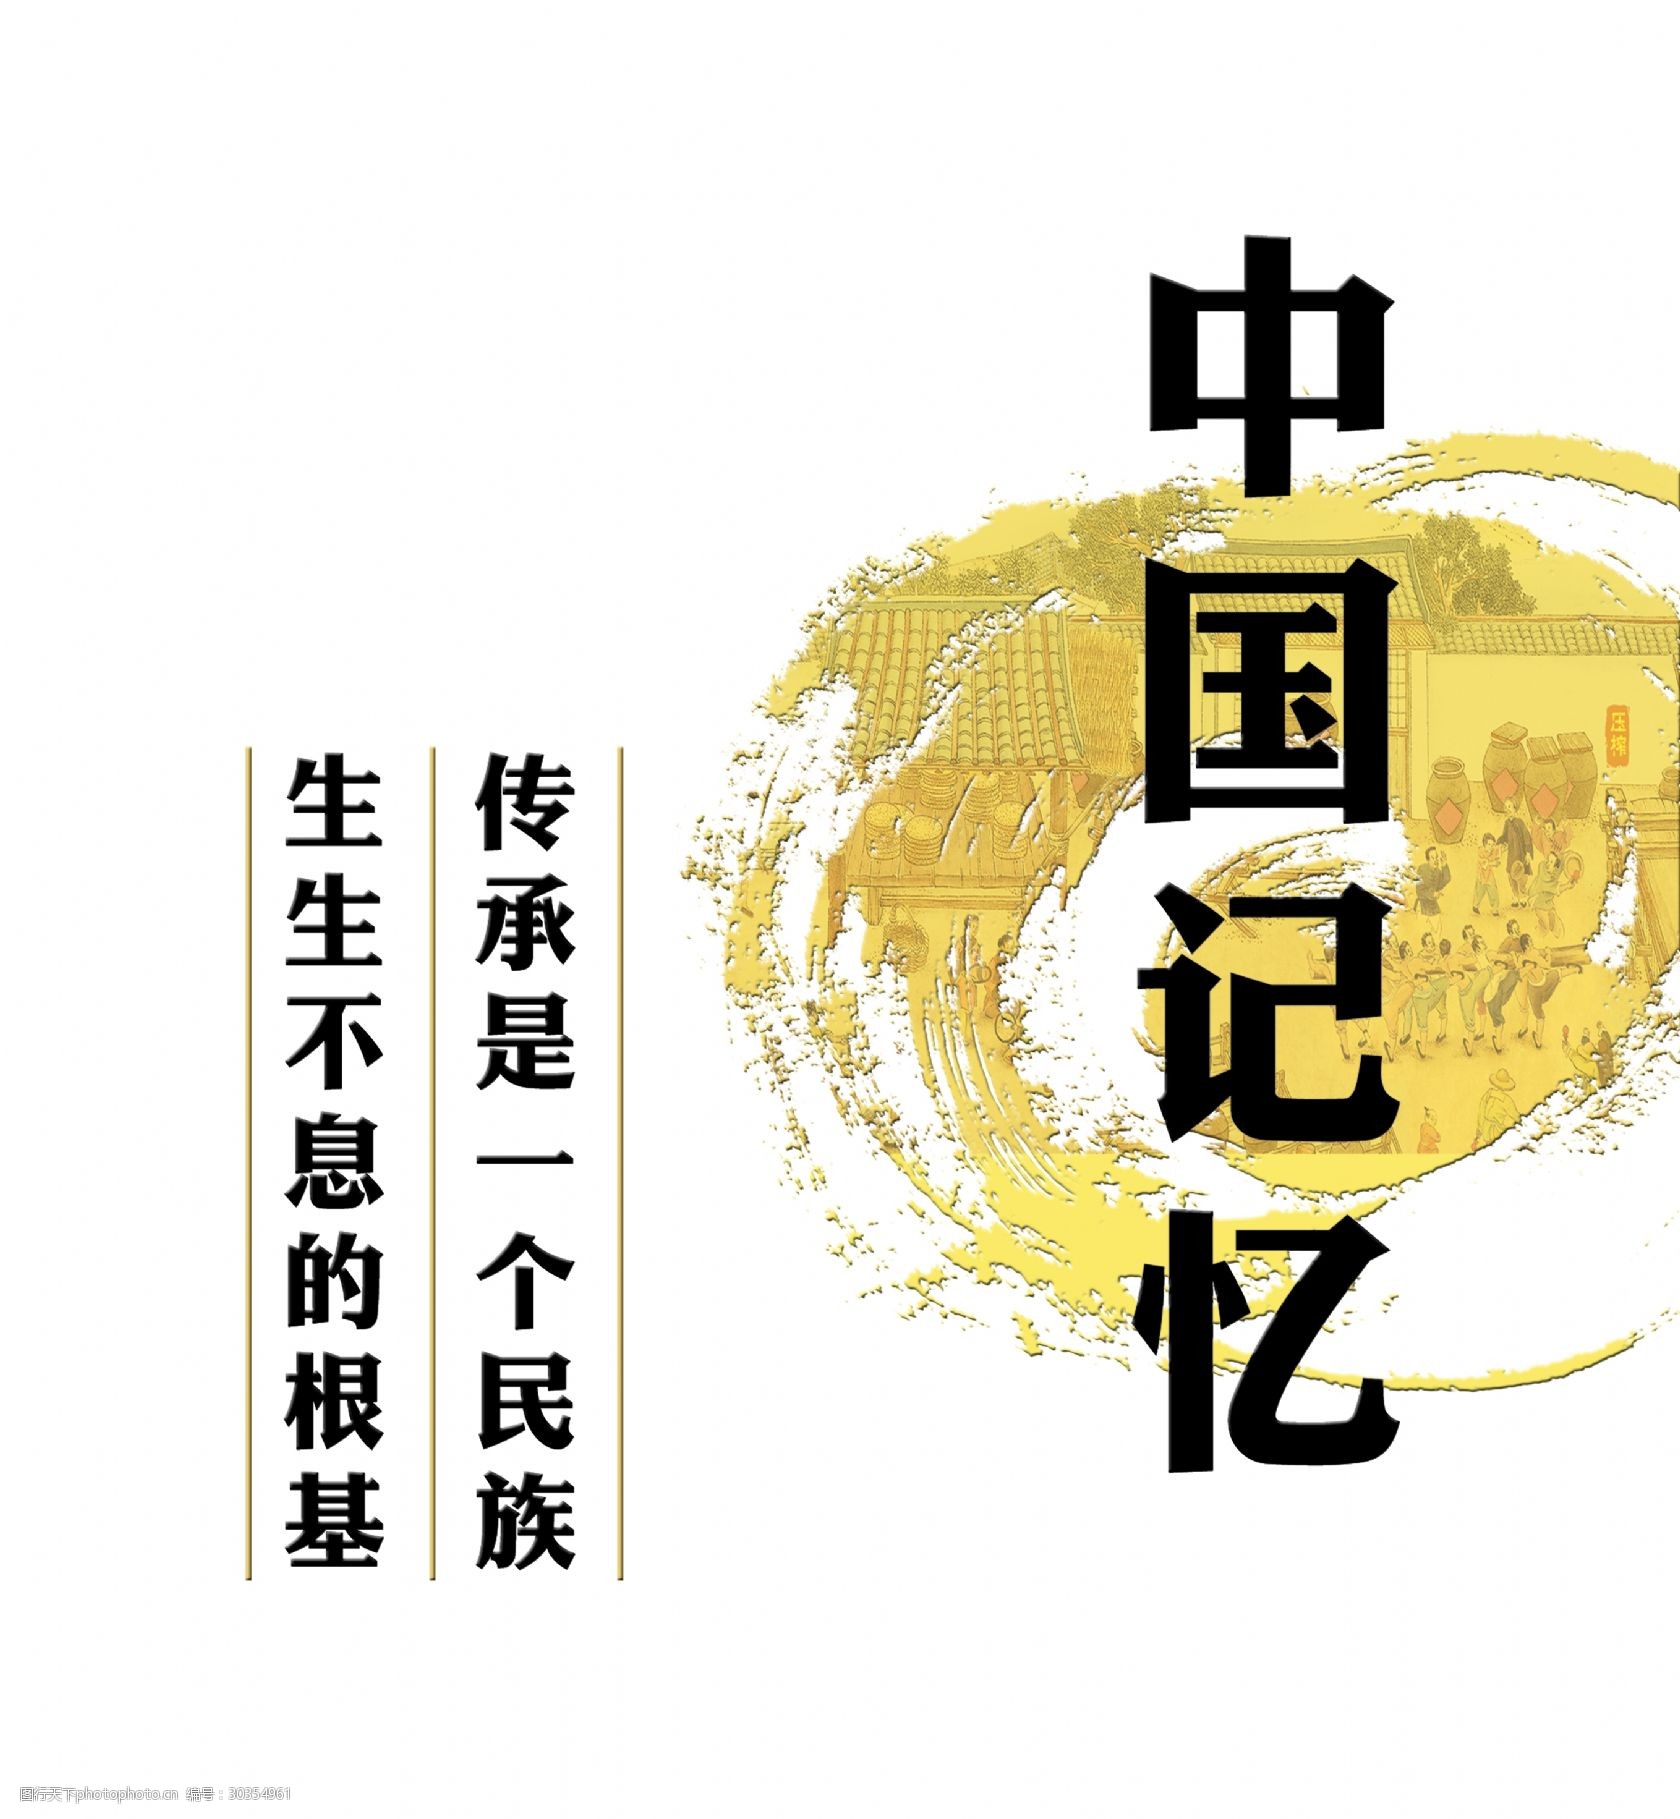 发展 设计 字体 排版 素材 中国记忆 文化传承 民族 根基 艺术字 png